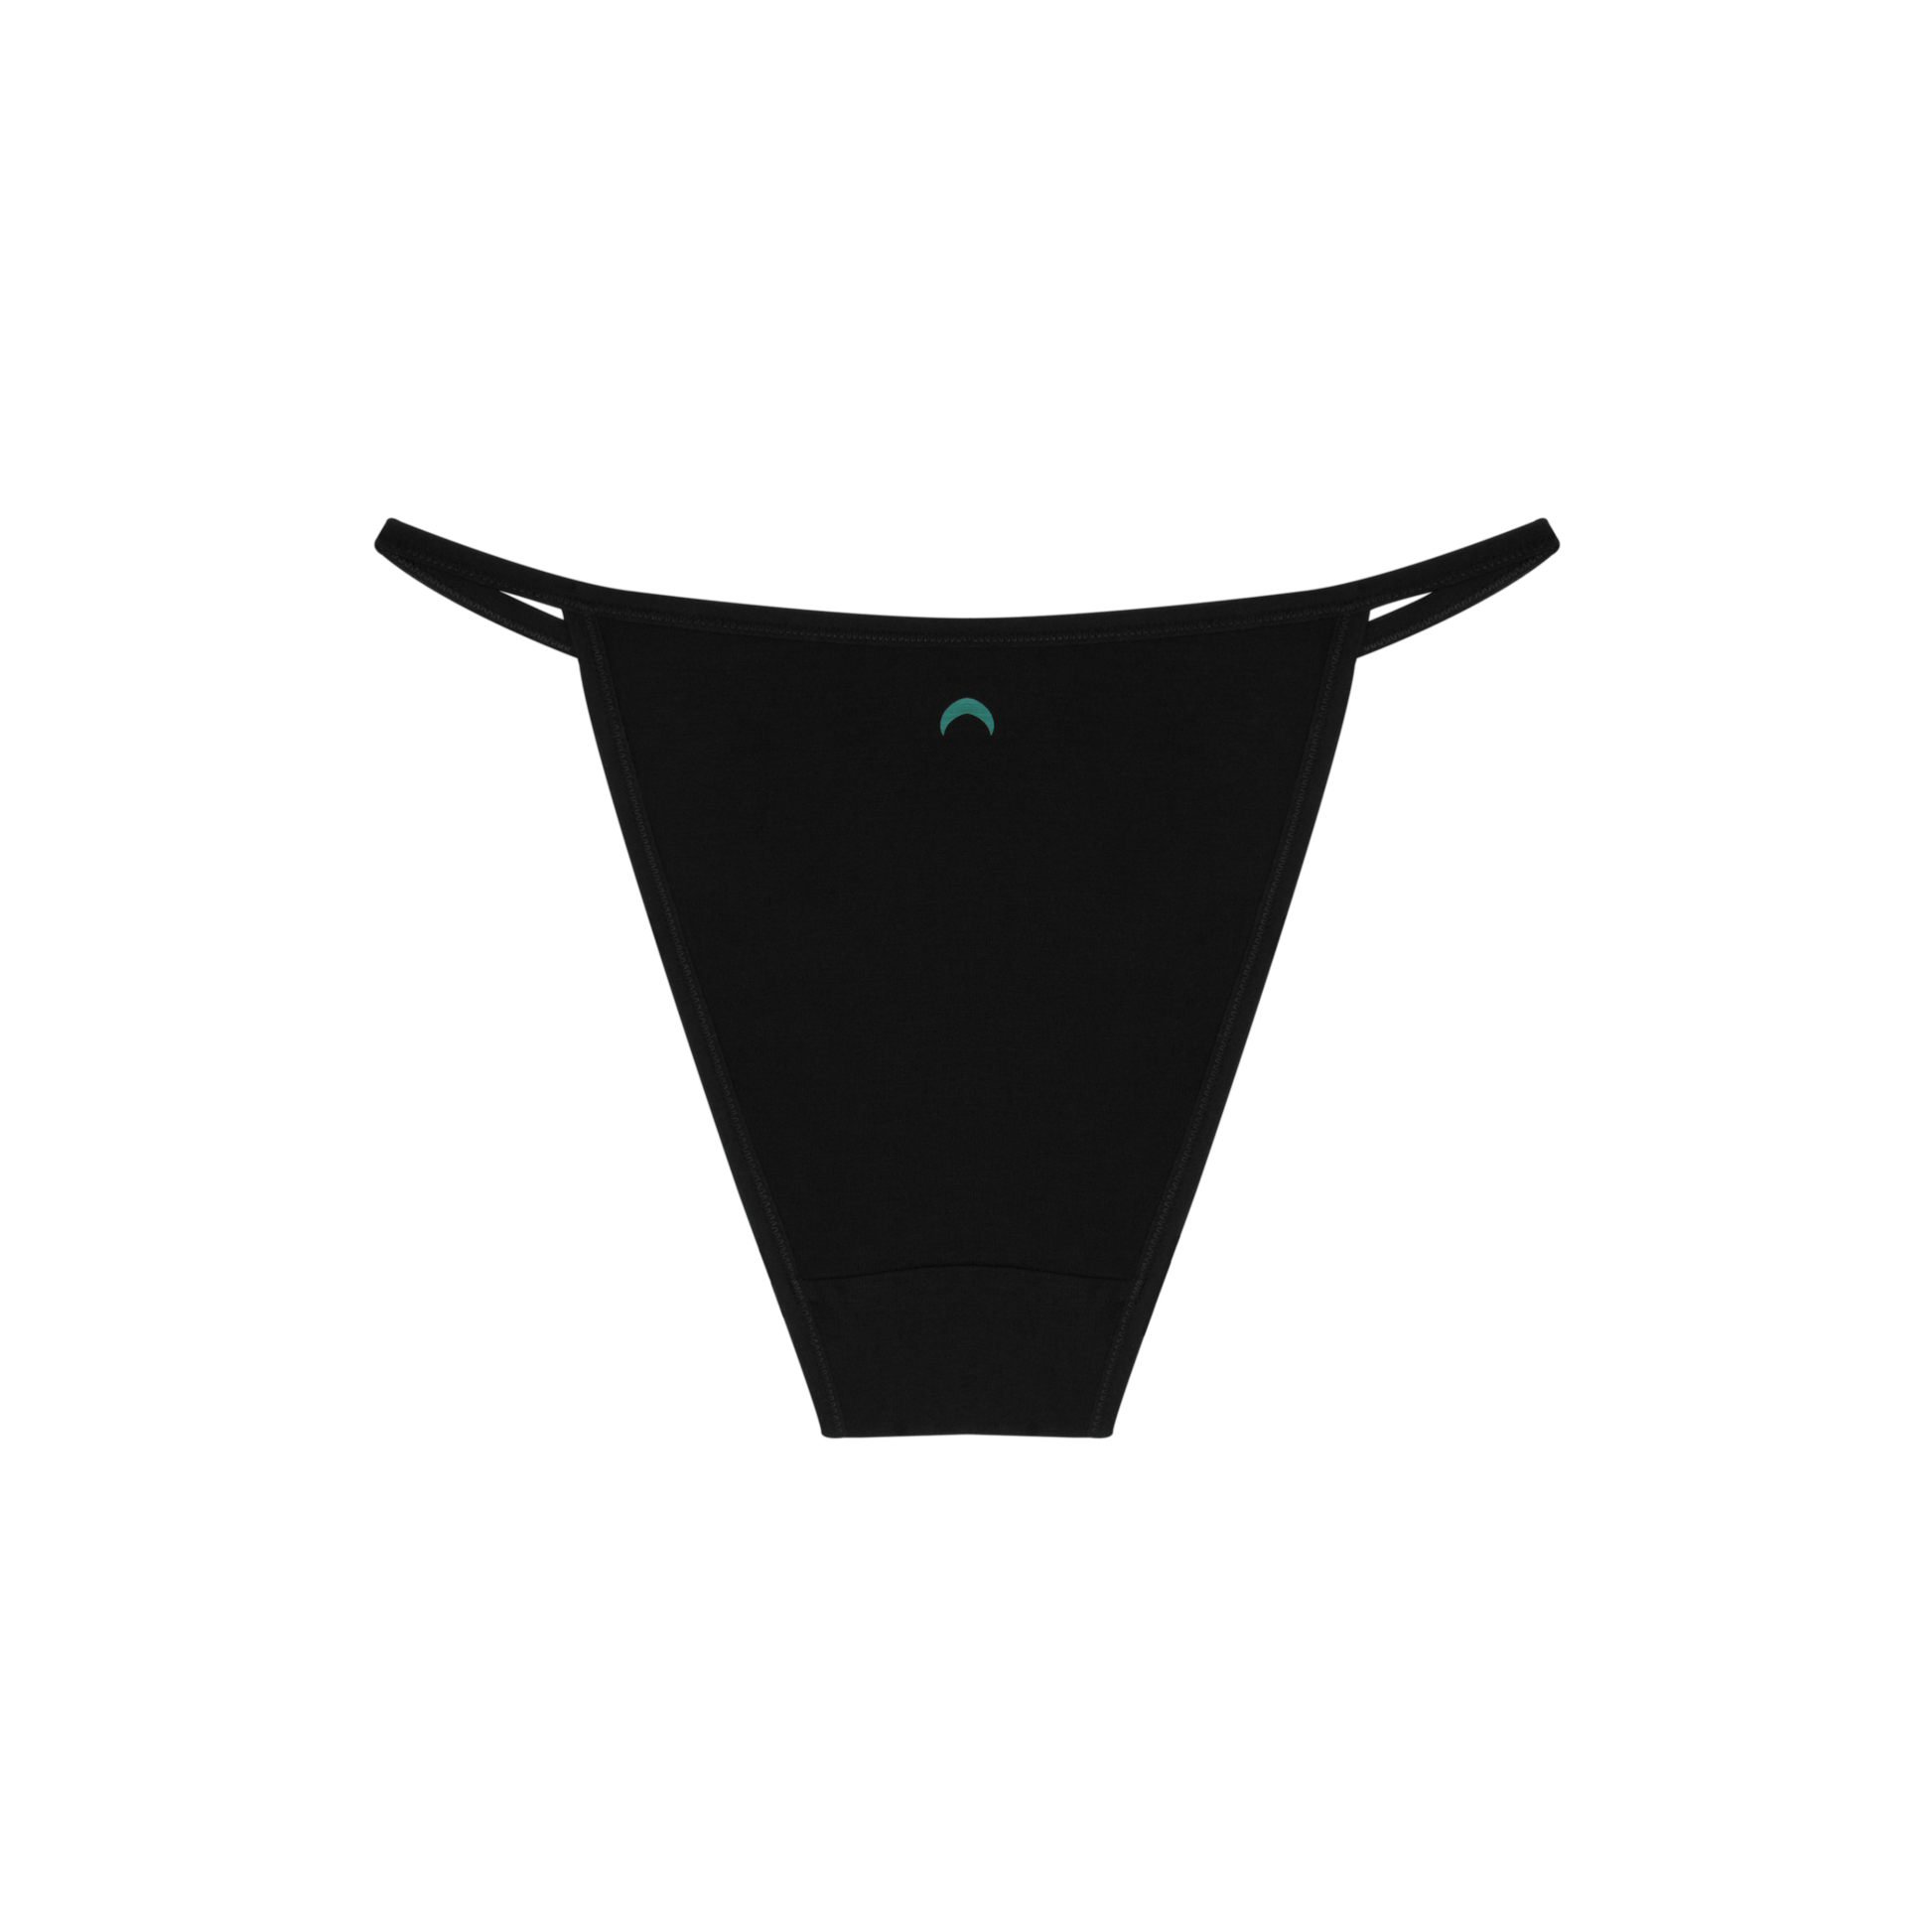 Women's modal cotton string bikini panties - 7 colors